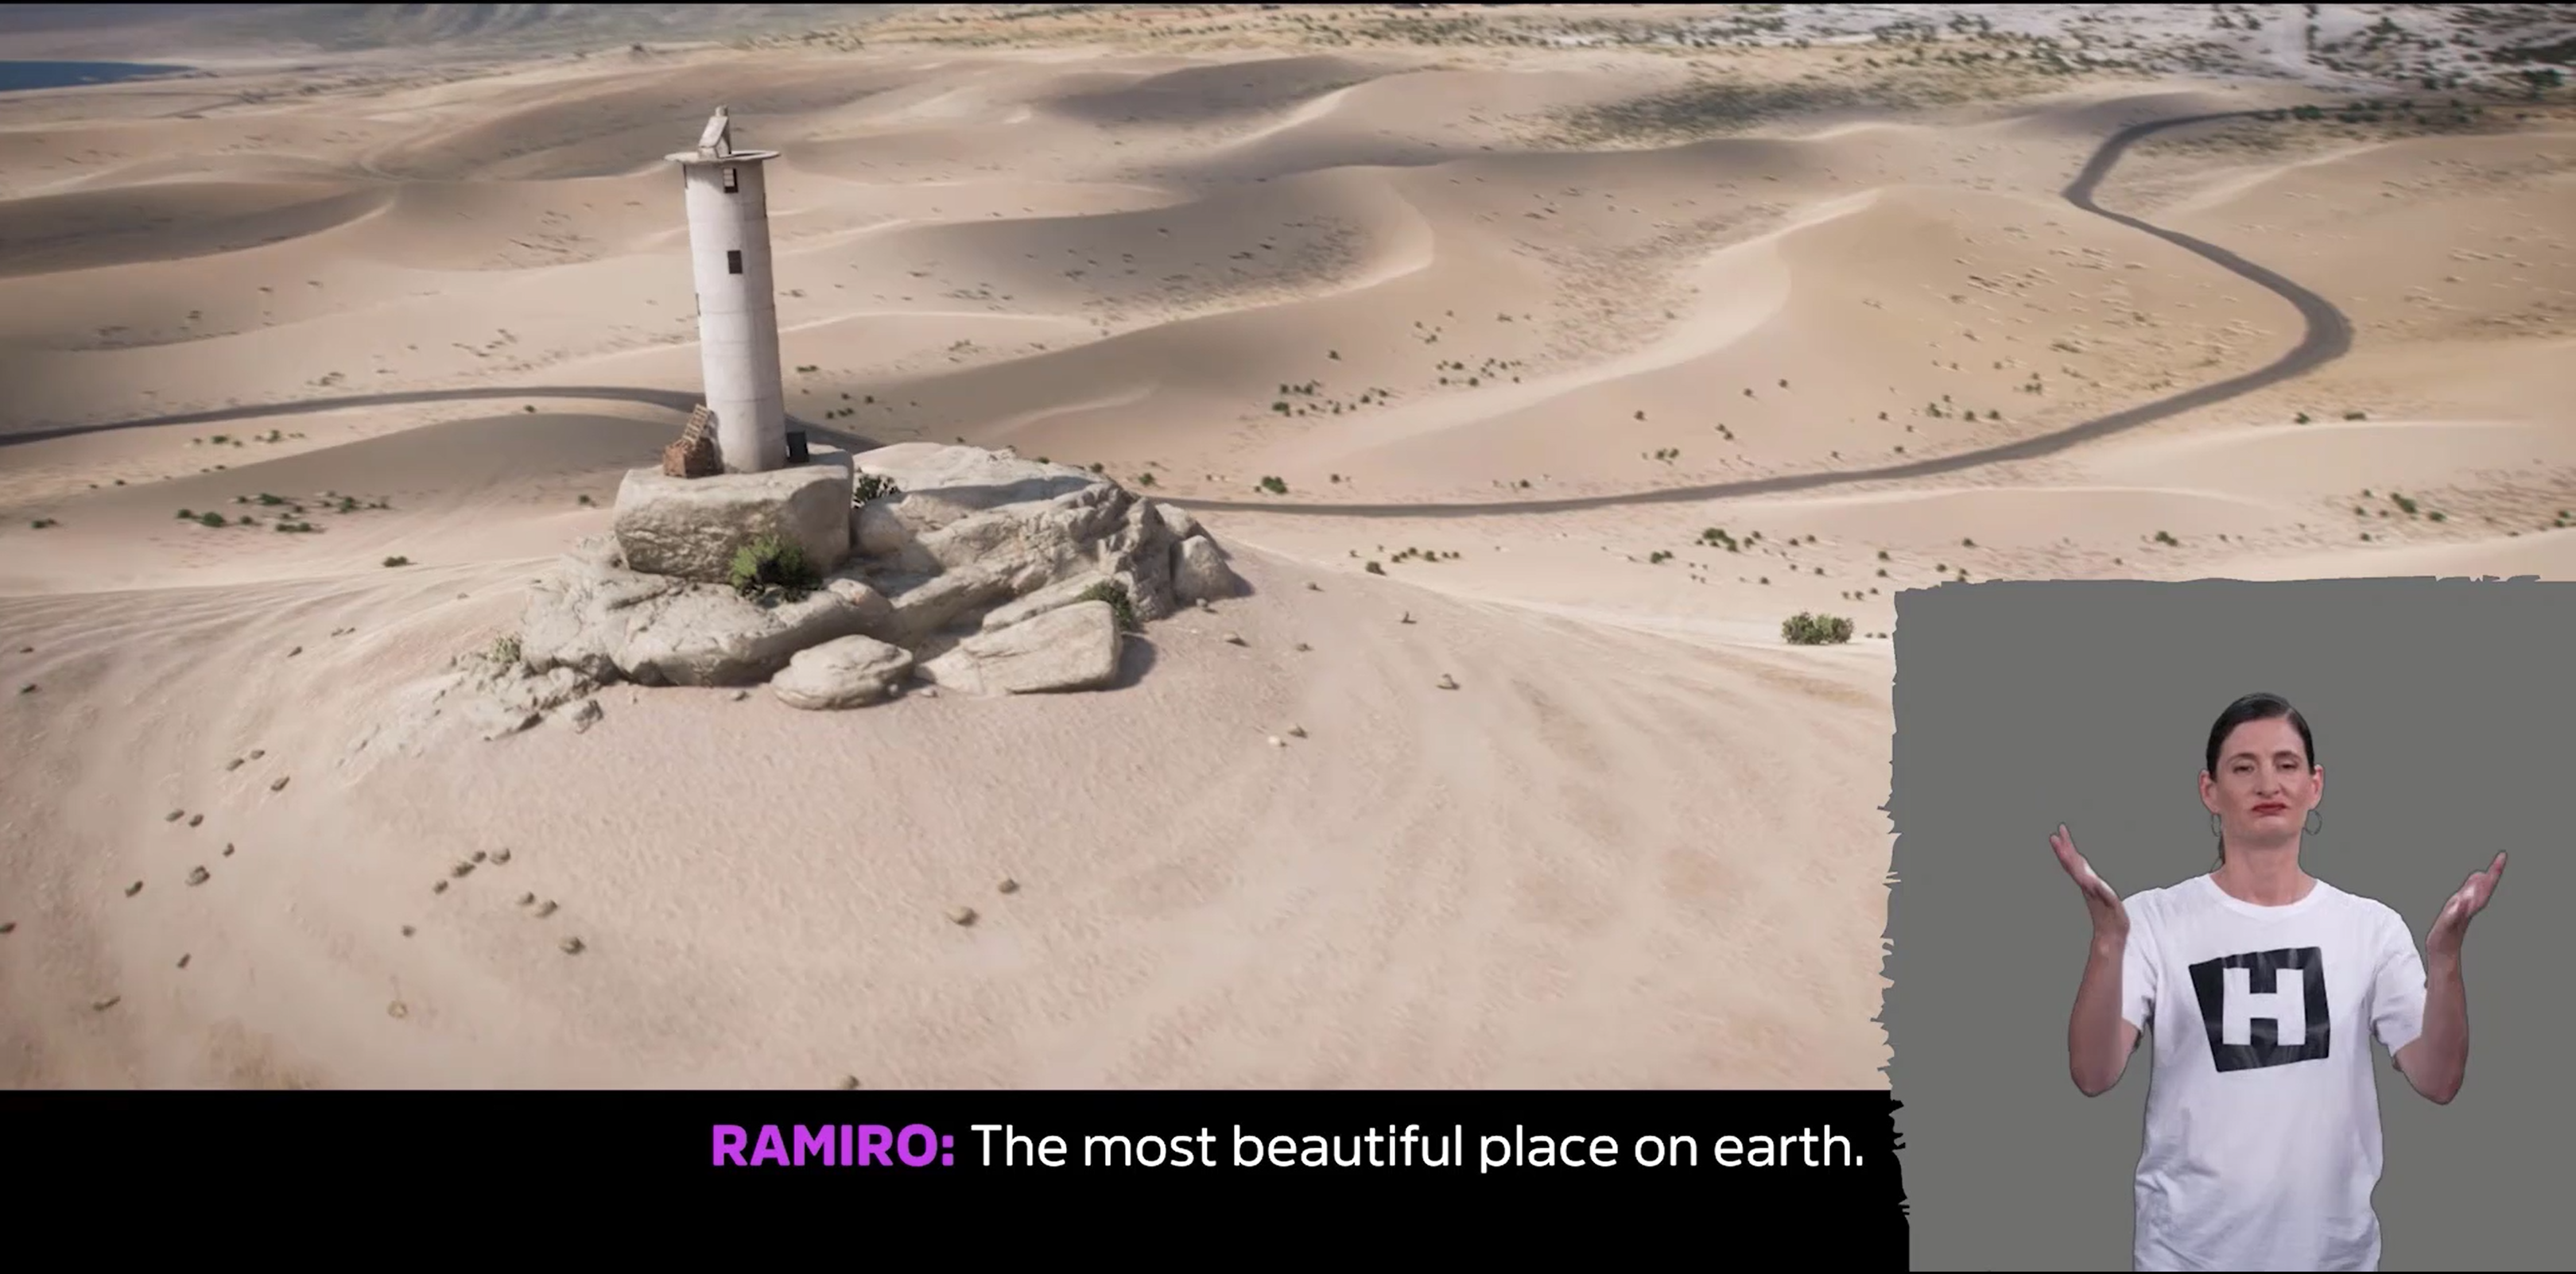 Forza Horizon 5 の一本の曲がりくねった道が砂漠を通り抜ける風景のスクリーンショット。オーバーレイの画面の右下にはインタープリターが手話しています。画面中央の下部の字幕には、「ラミロ: 地球上で最も美しい場所」と書いてあります。